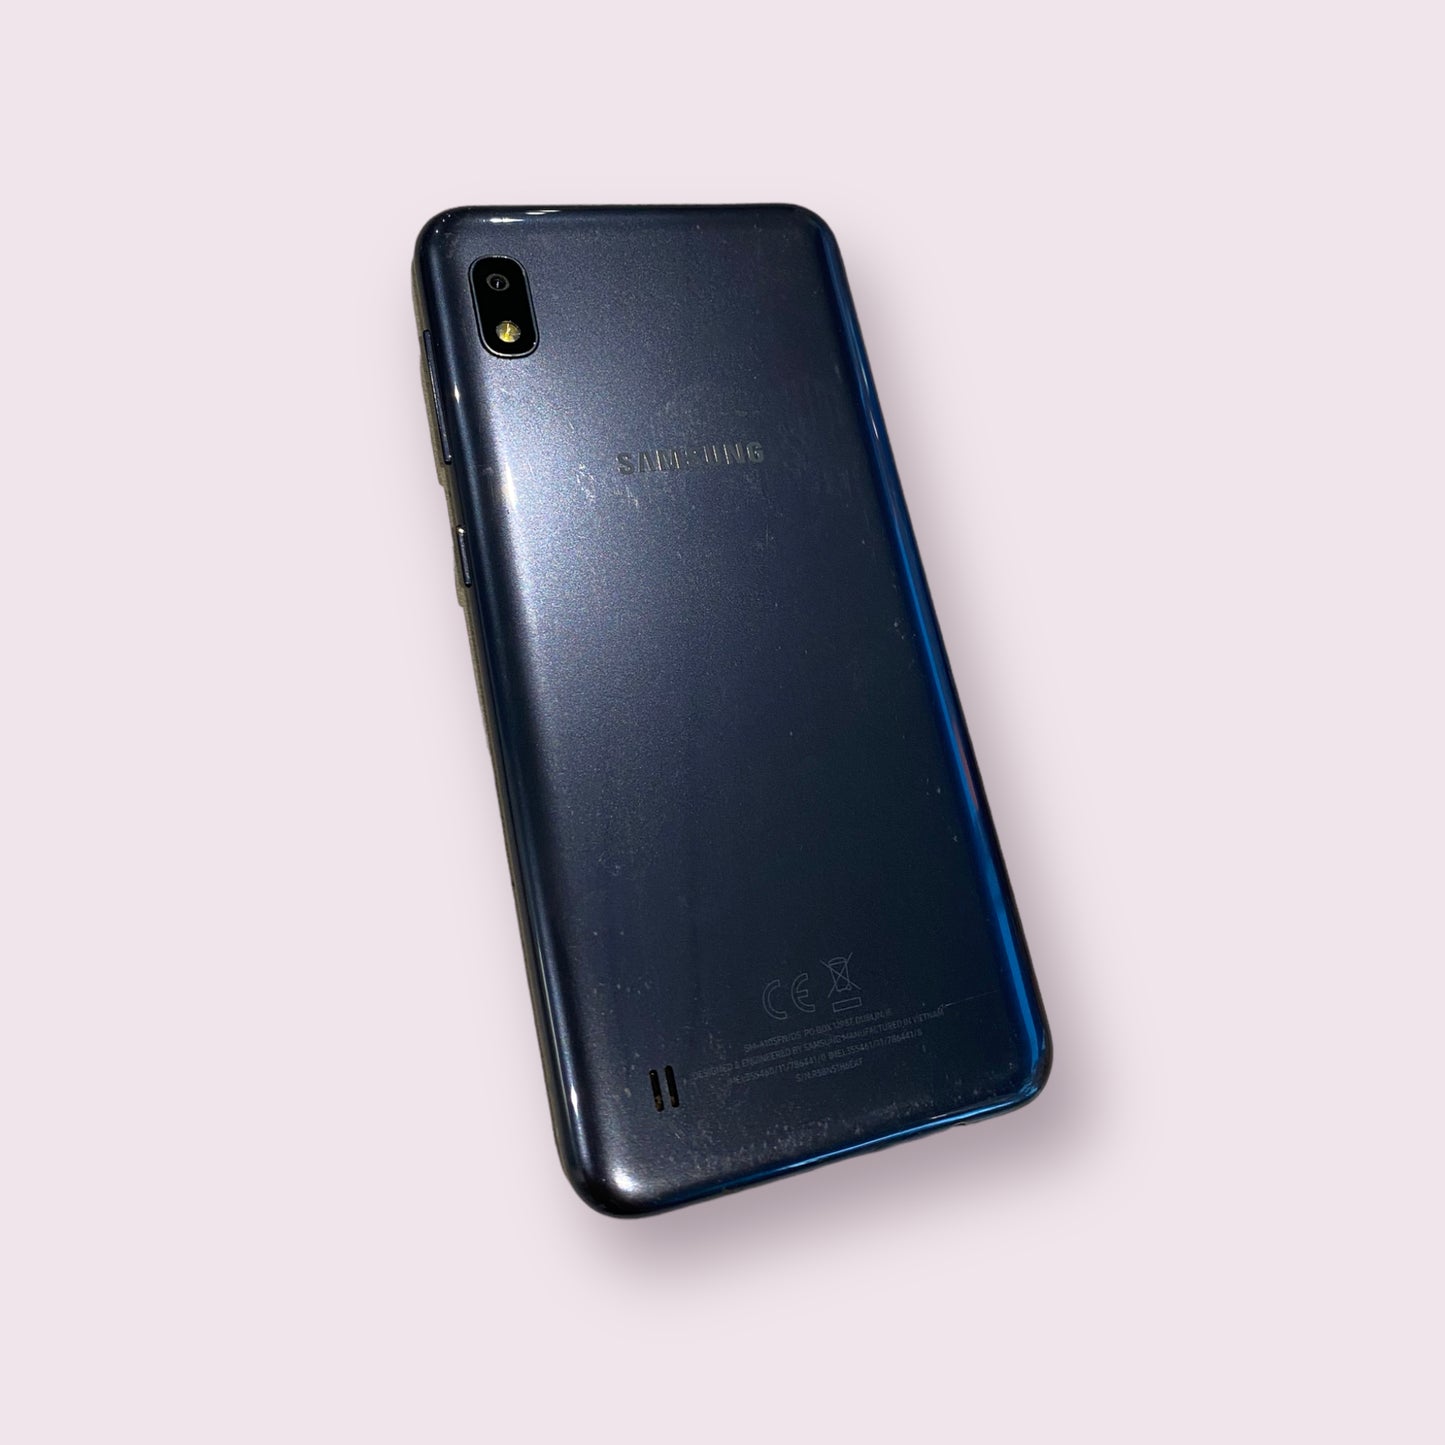 Samsung Galaxy A10 SM-A105FN/DS 32GB blue Dual Sim smartphone - Unlocked - Grade C